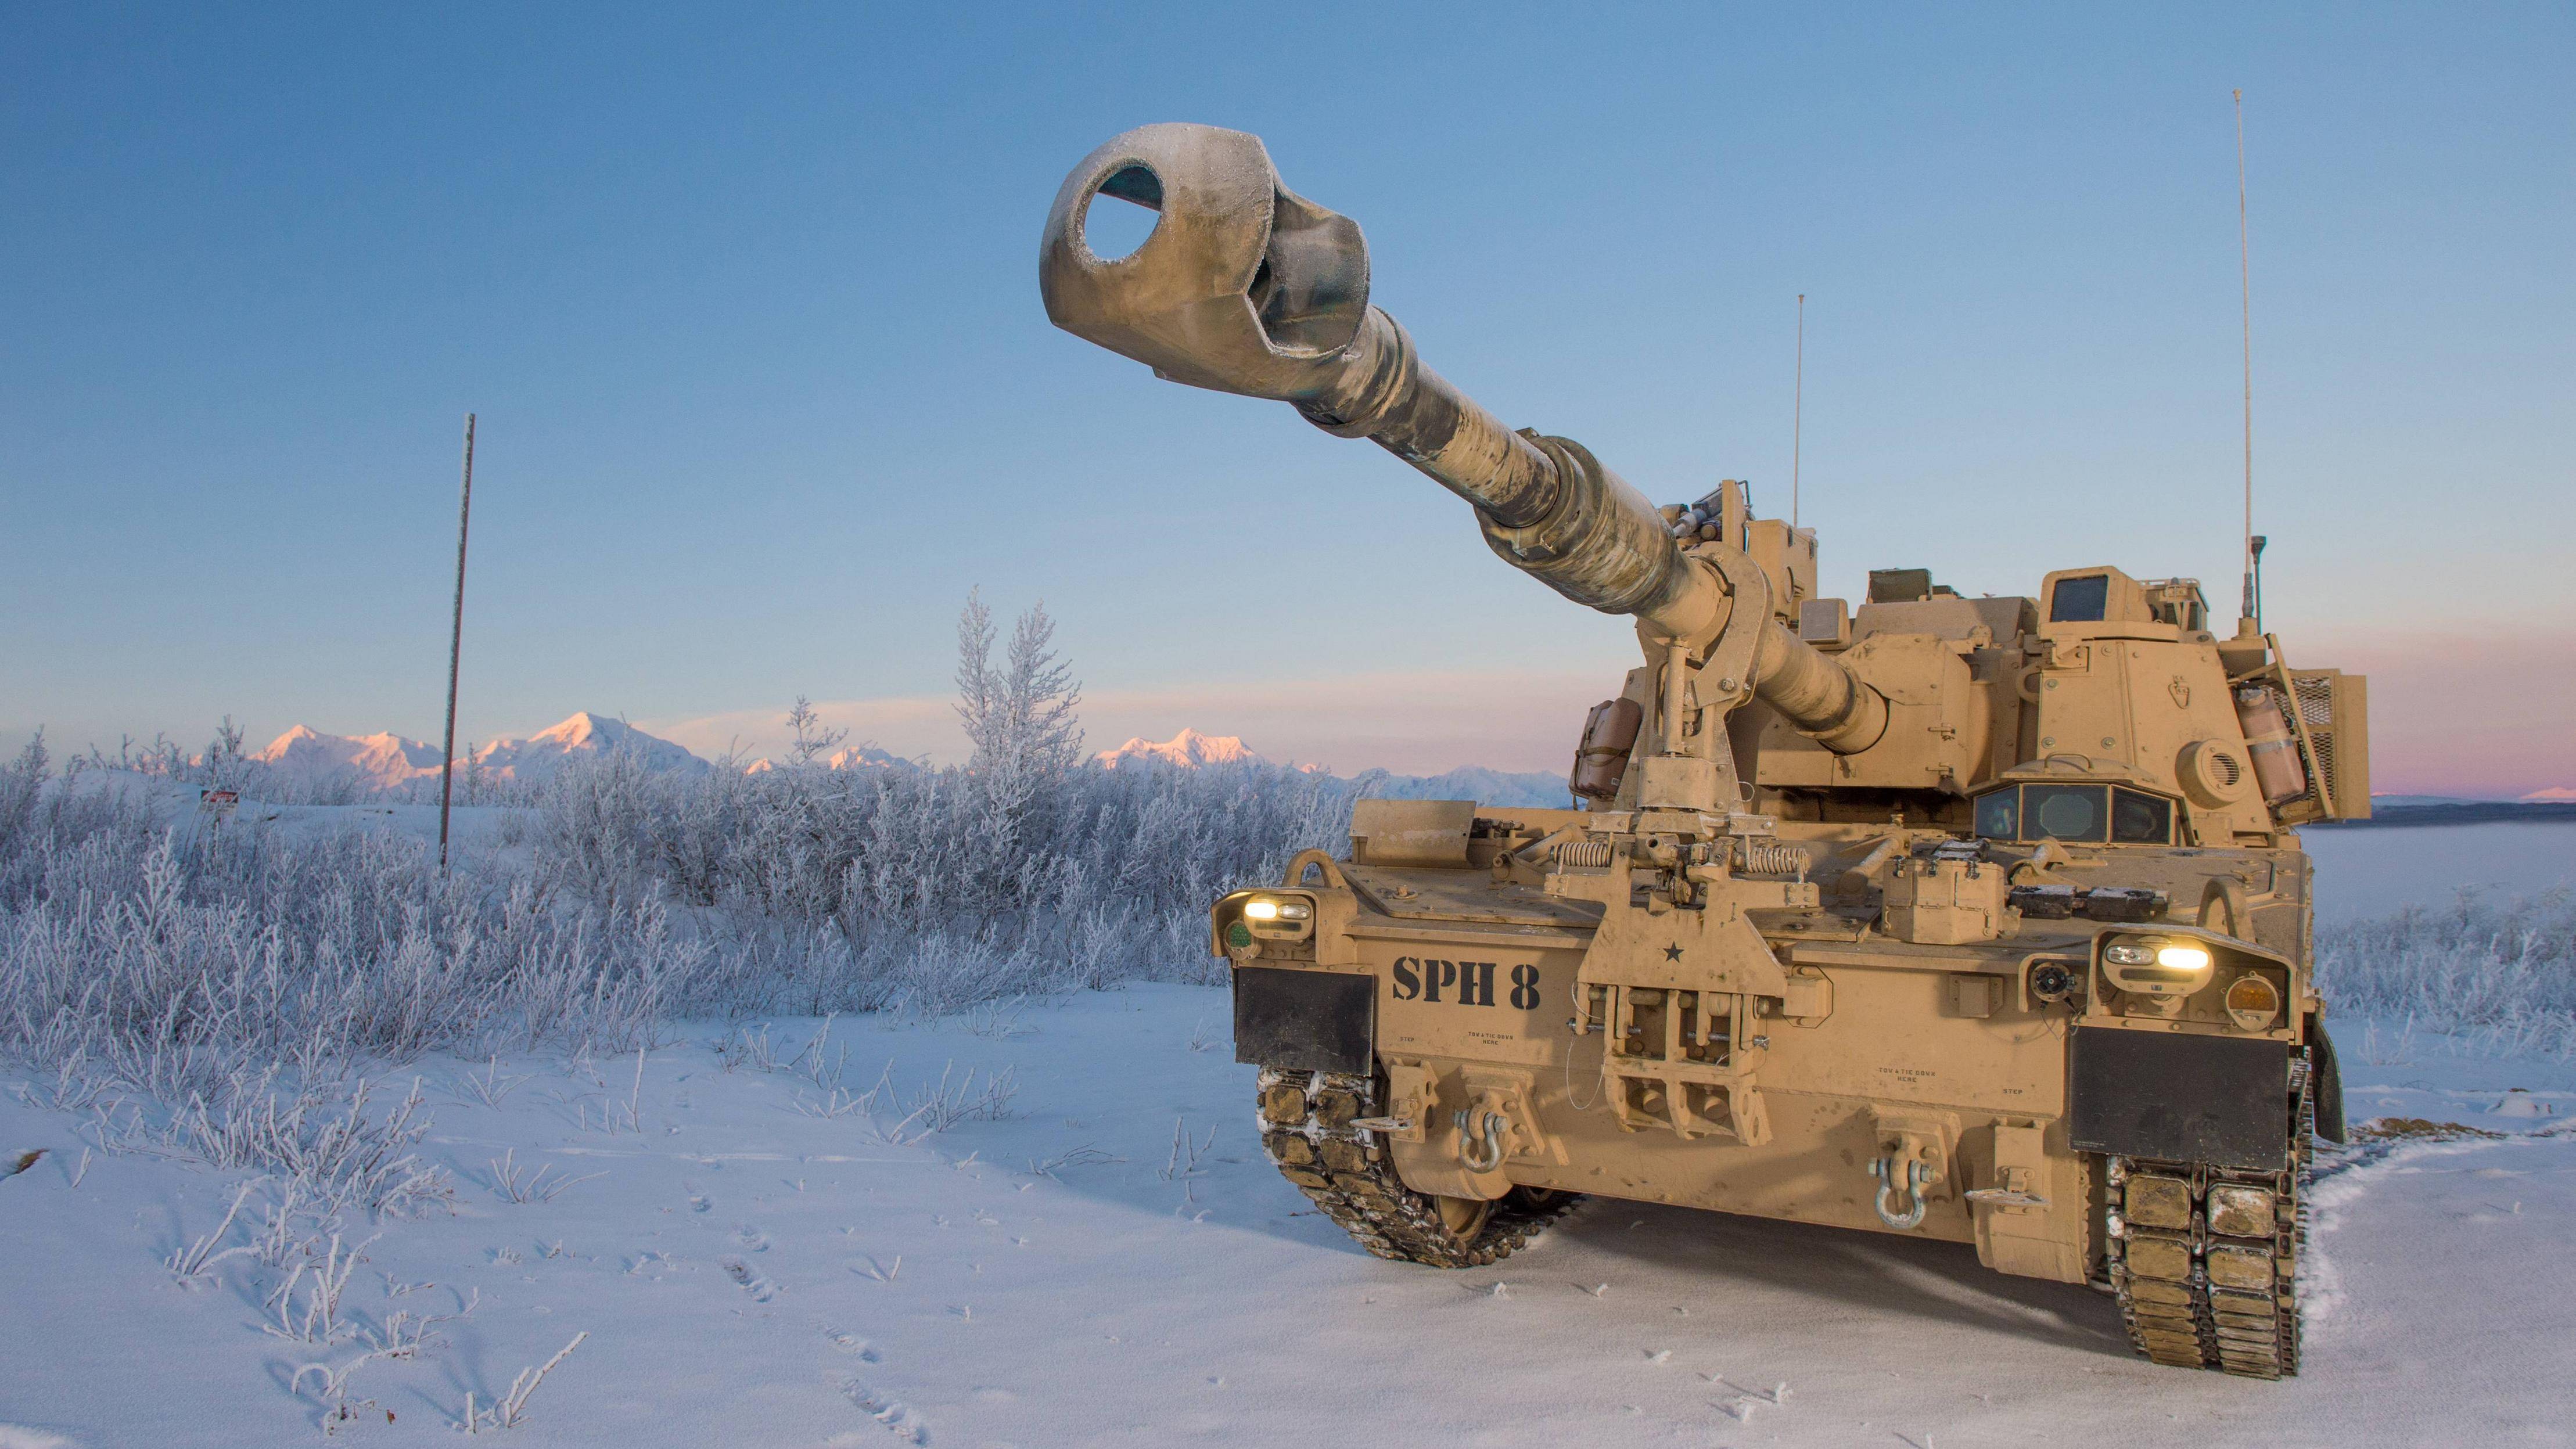 Армия: артиллерия: состояние и перспективы развития 155-мм боеприпасов полевой артиллерии за рубежом